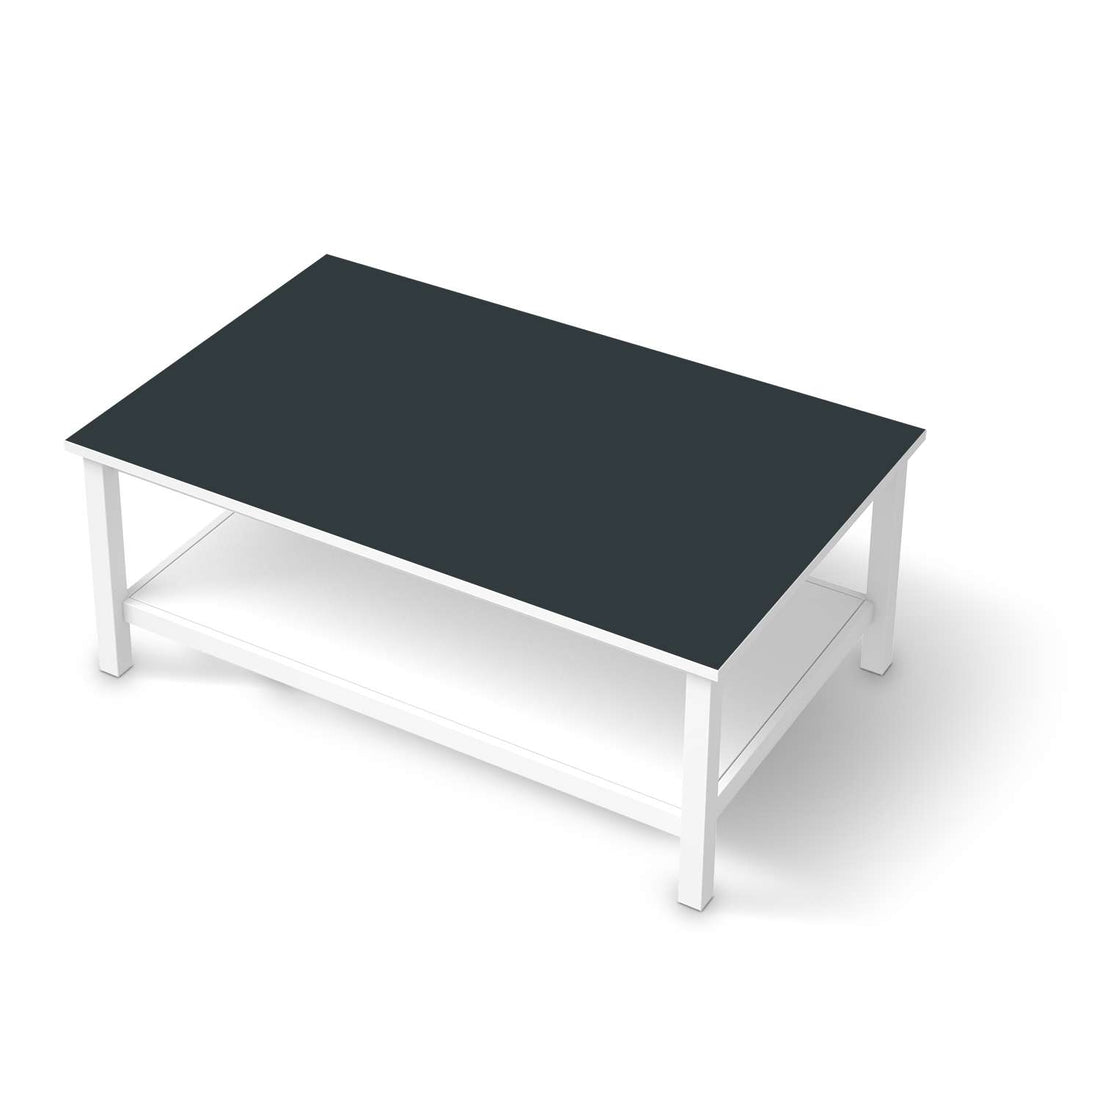 Möbelfolie Blaugrau Dark - IKEA Hemnes Couchtisch 118x75 cm  - weiss